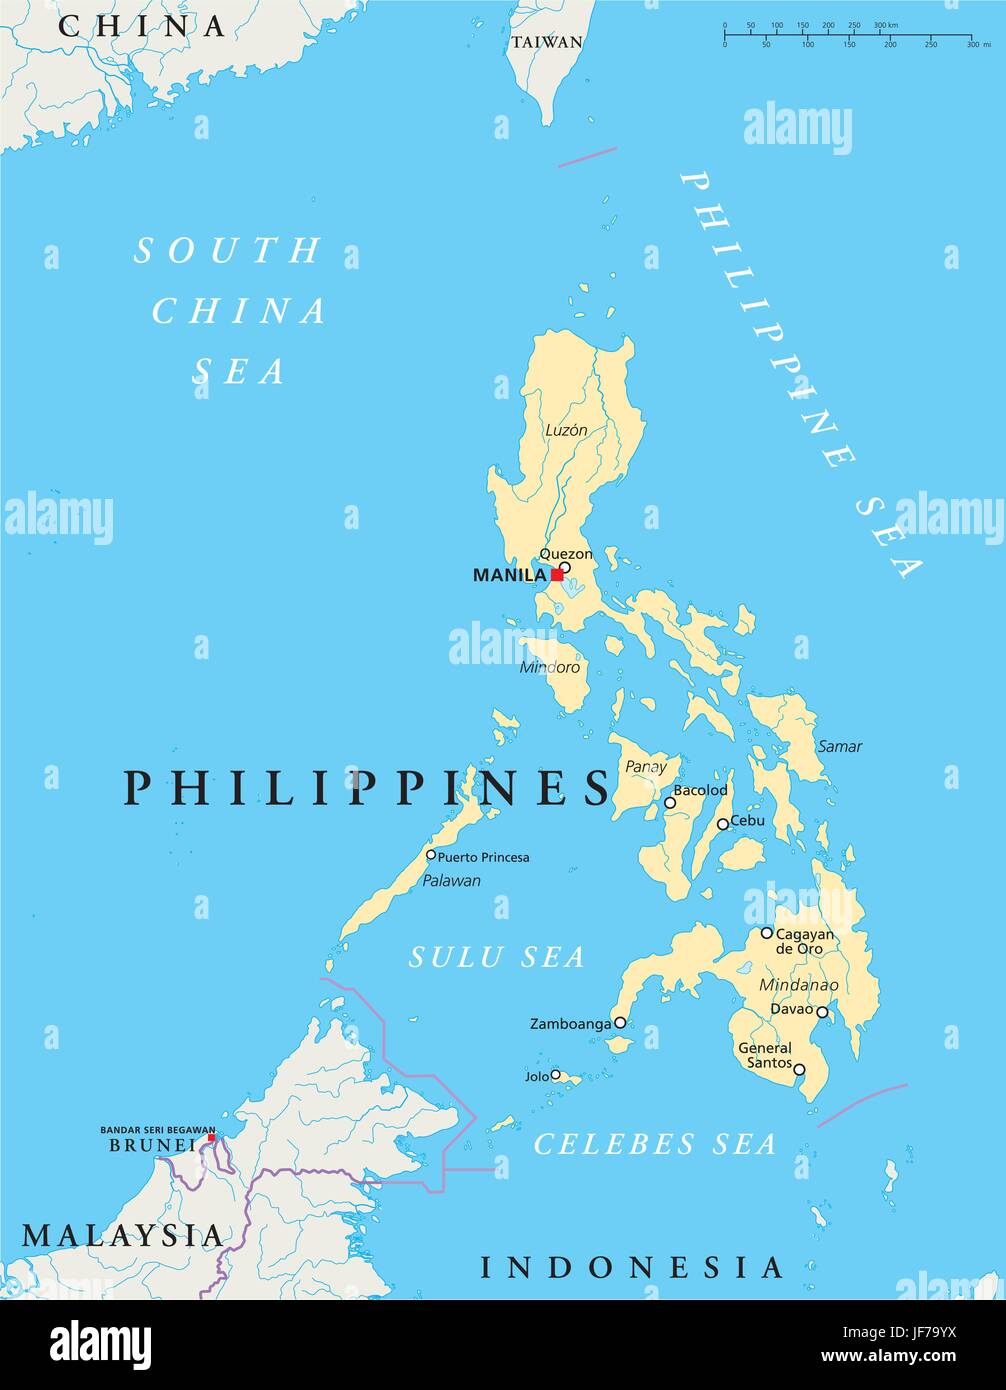 Filippine, mappa, Atlas, mappa del mondo, viaggi, politico, asia Illustrazione Vettoriale